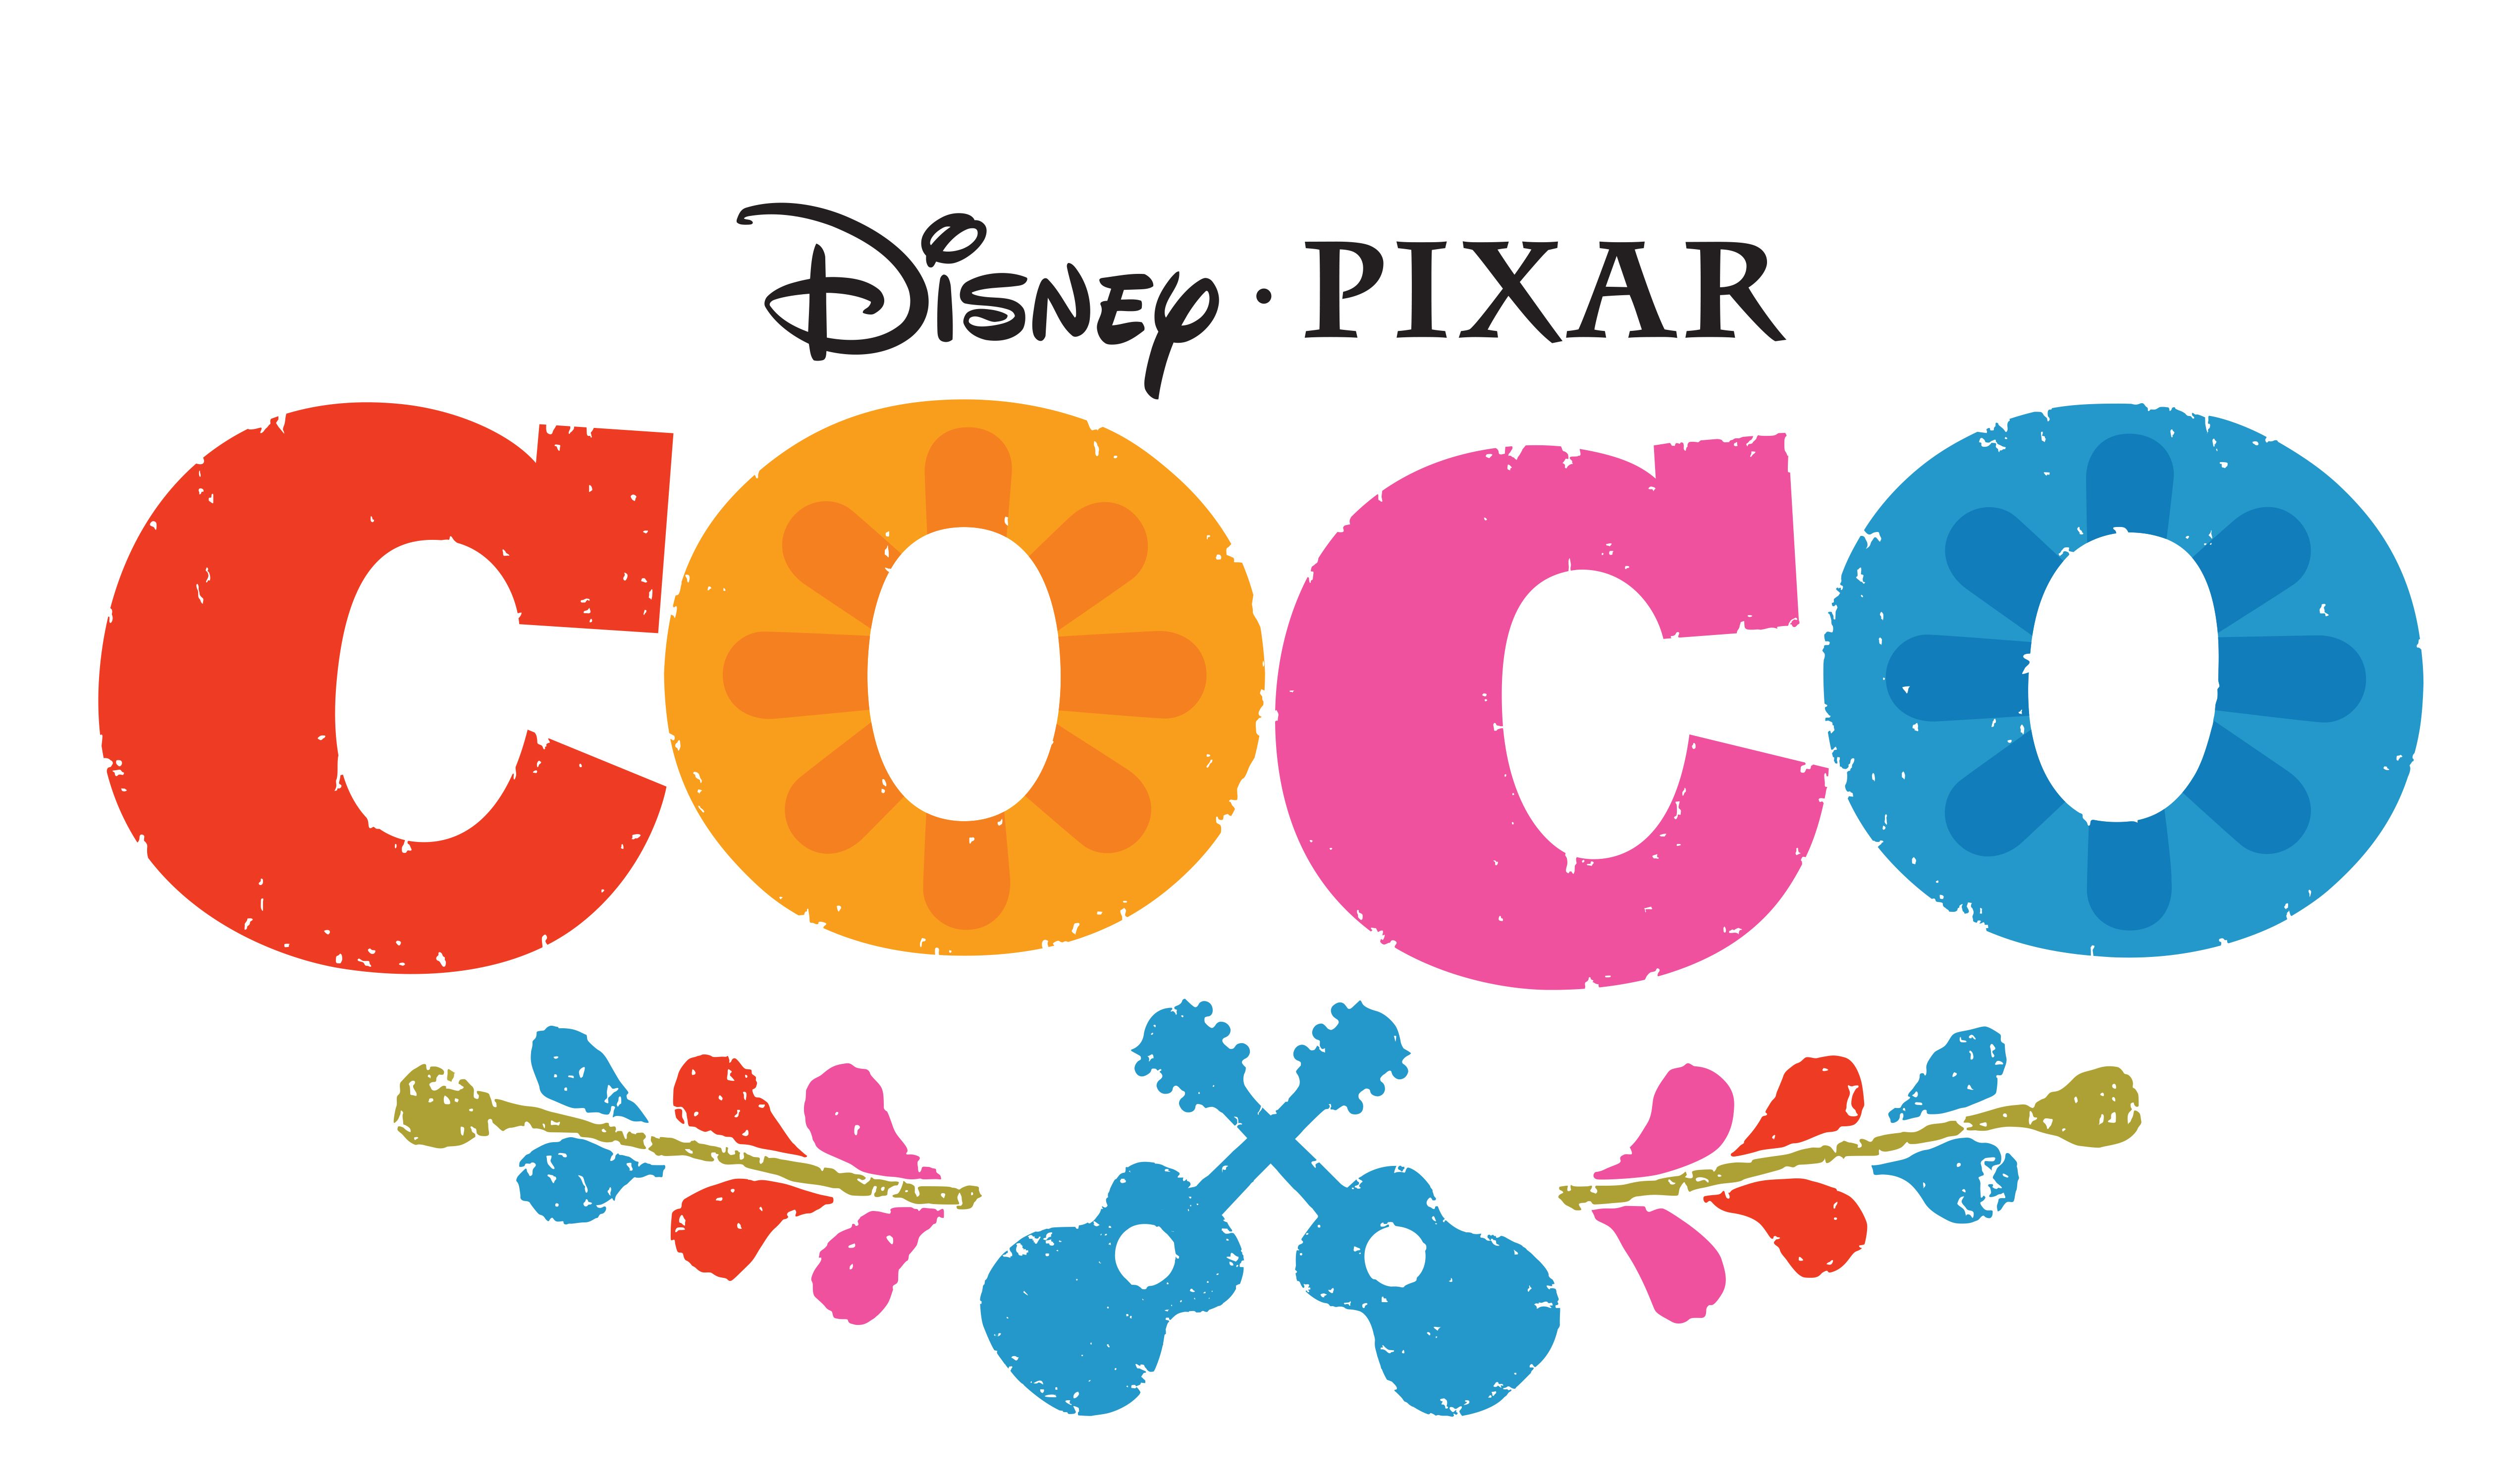 Pixar Coco Logo